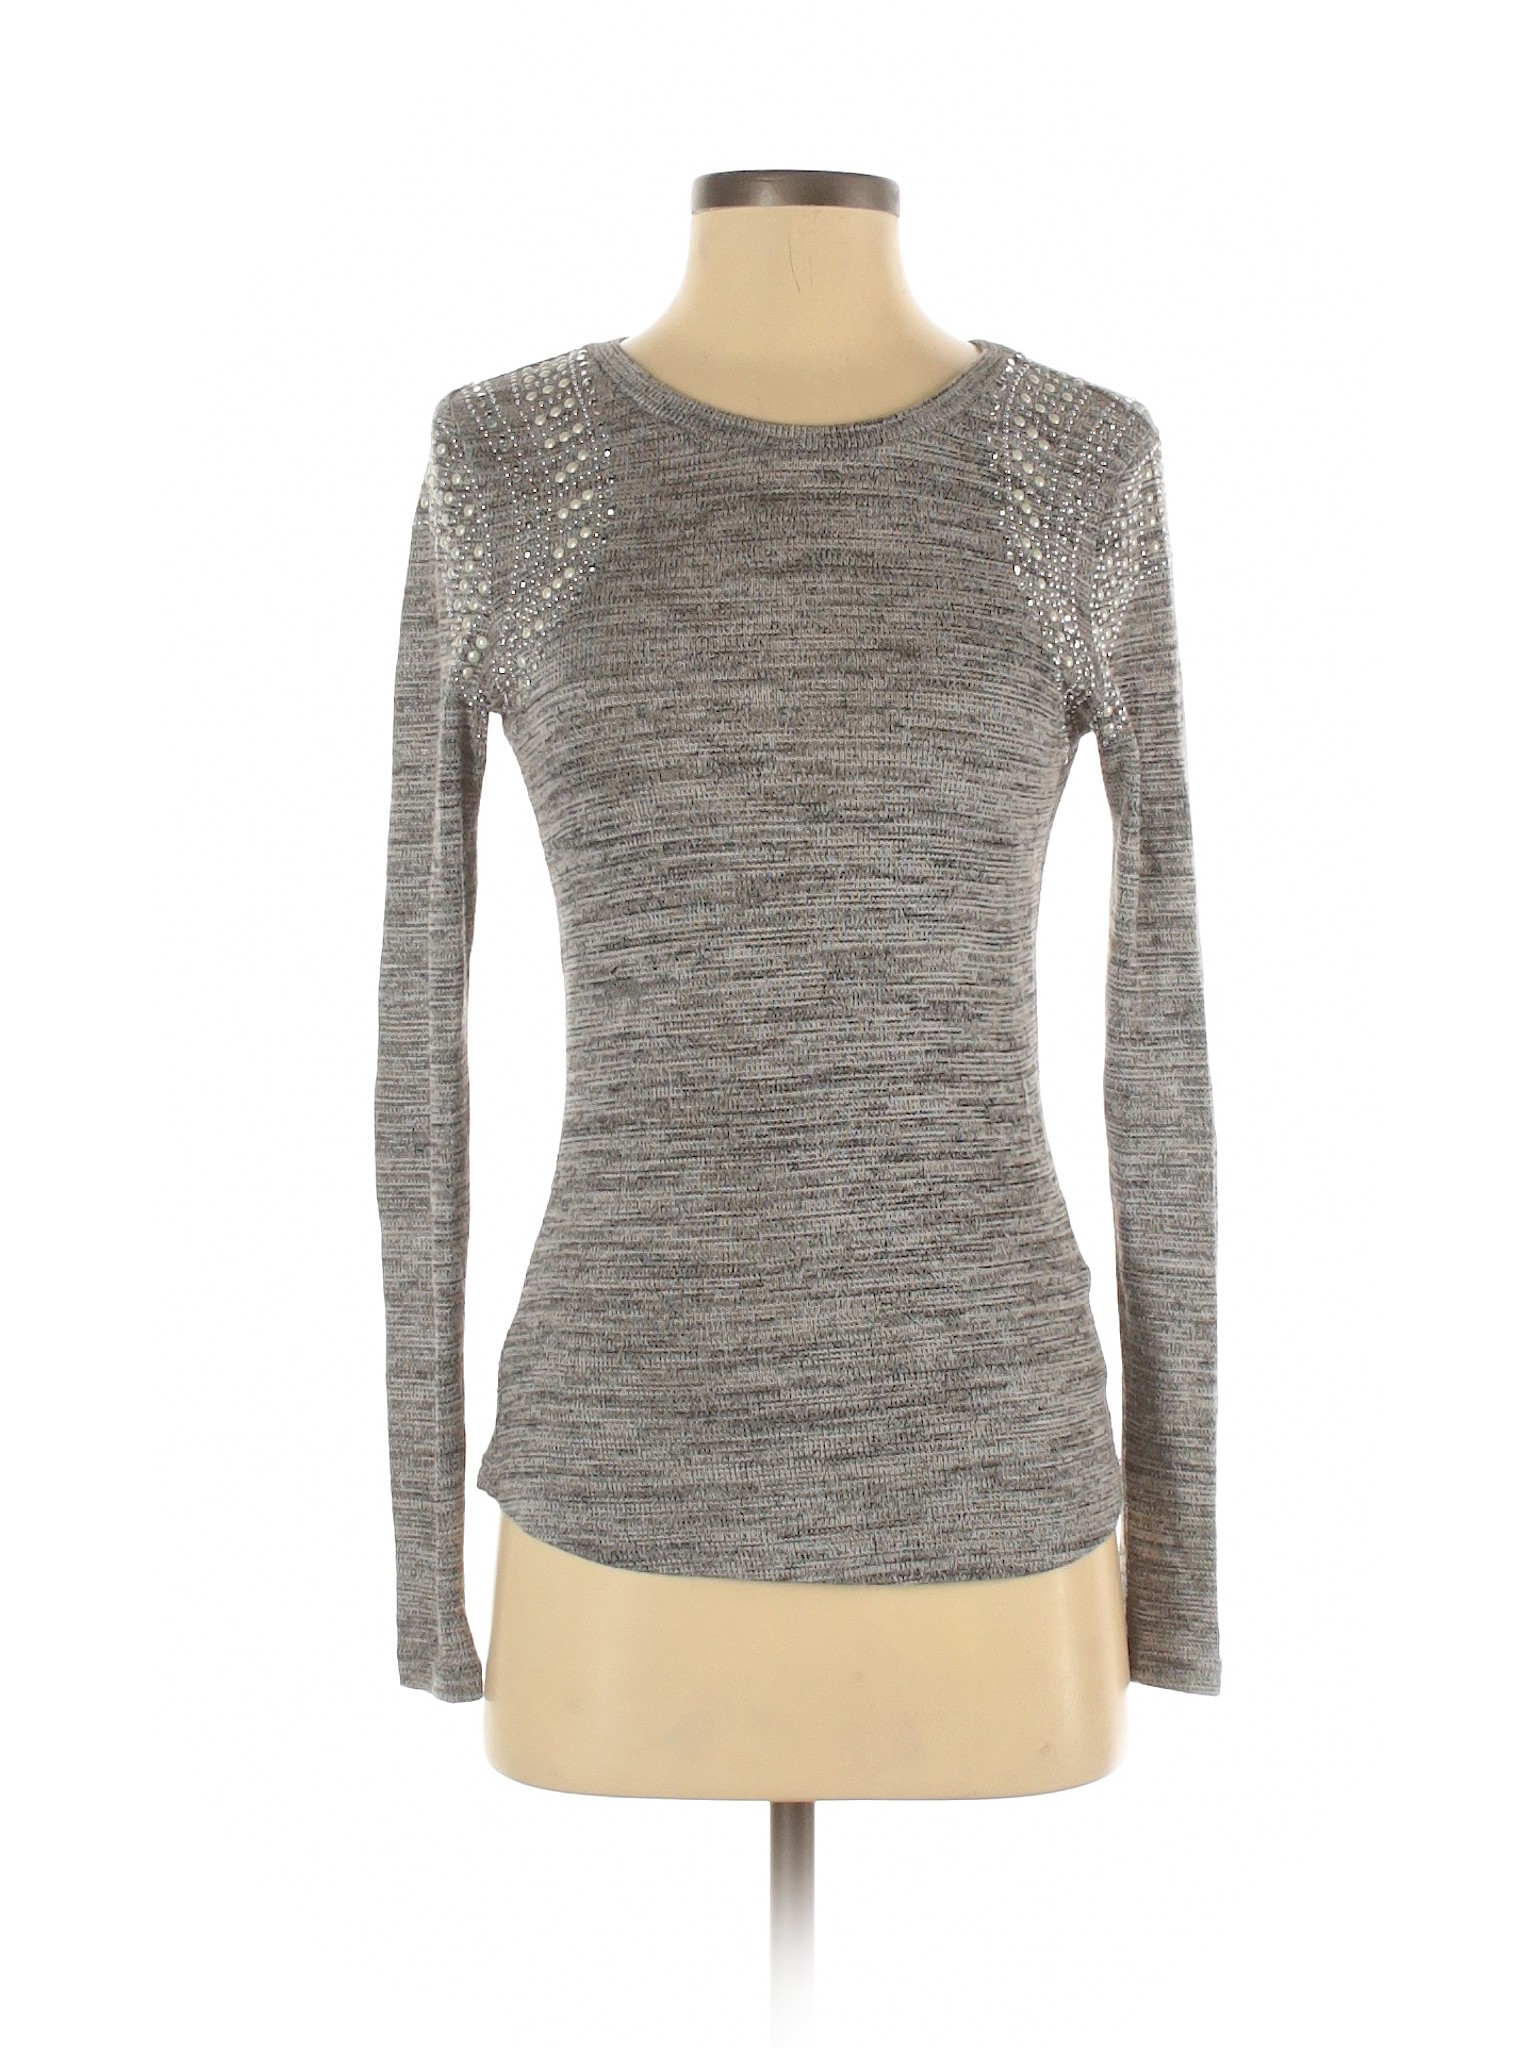 Cherry Women Gray Pullover Sweater XS | eBay